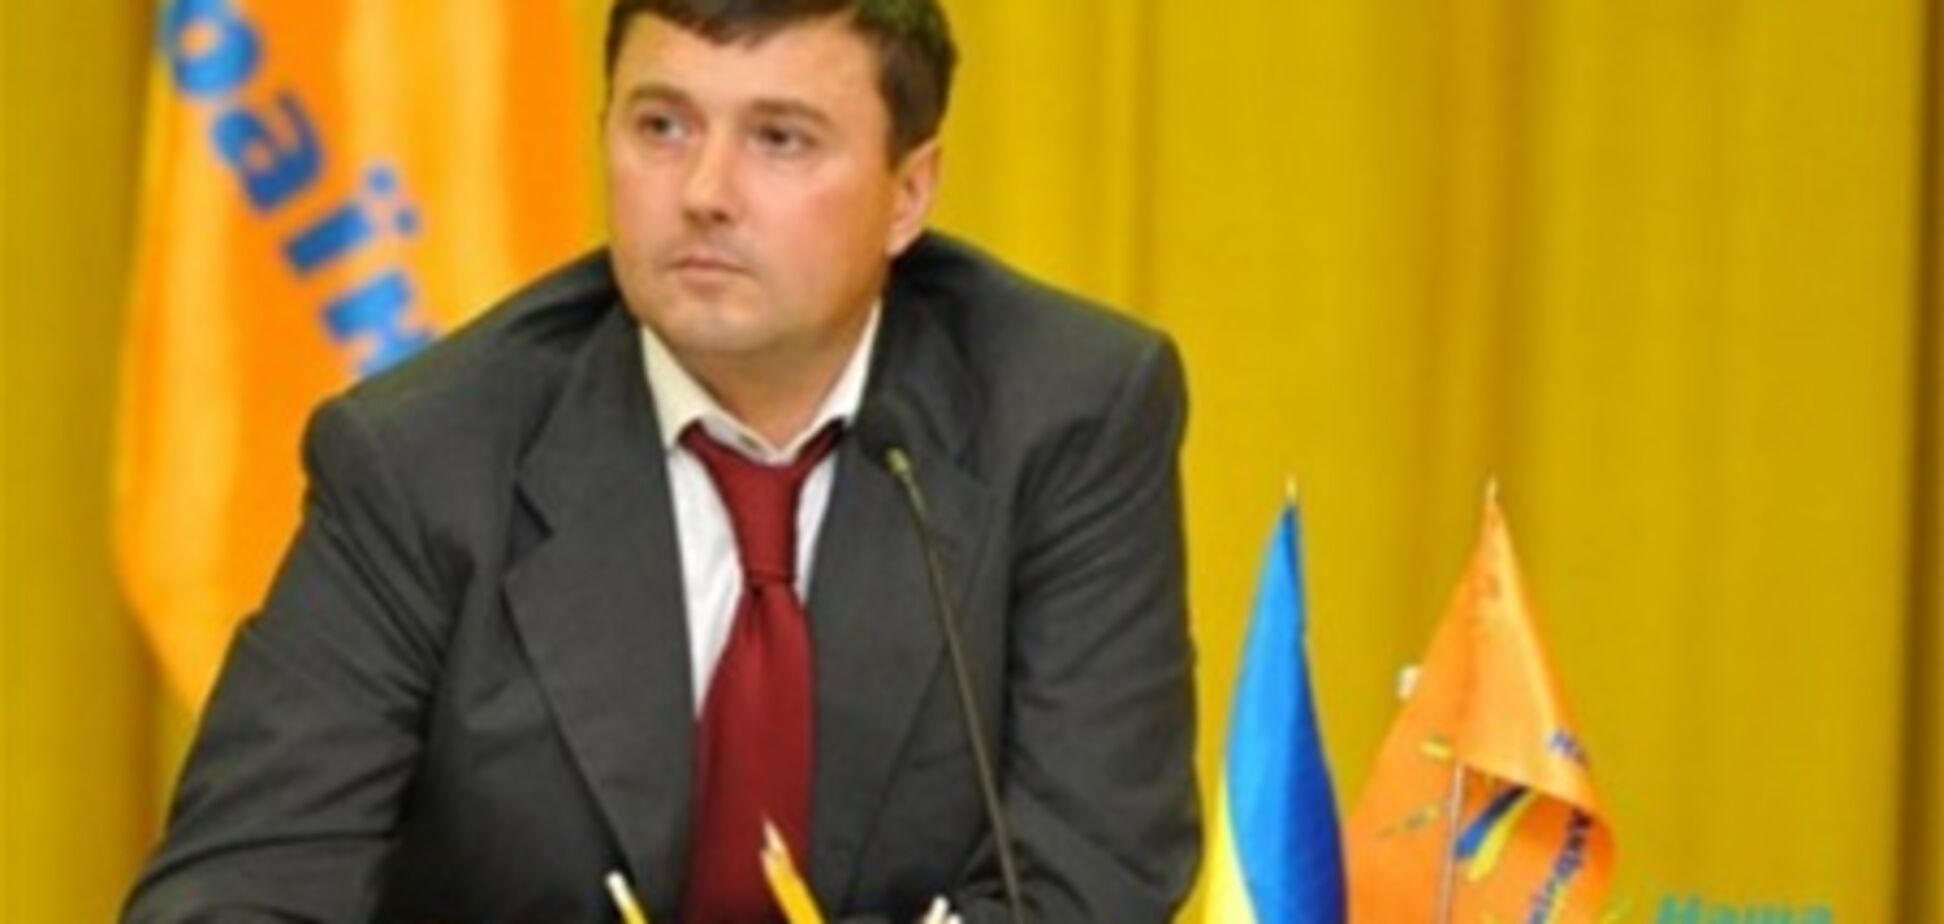 Бондарчук рассказал о конфликте в 'Нашей Украине'